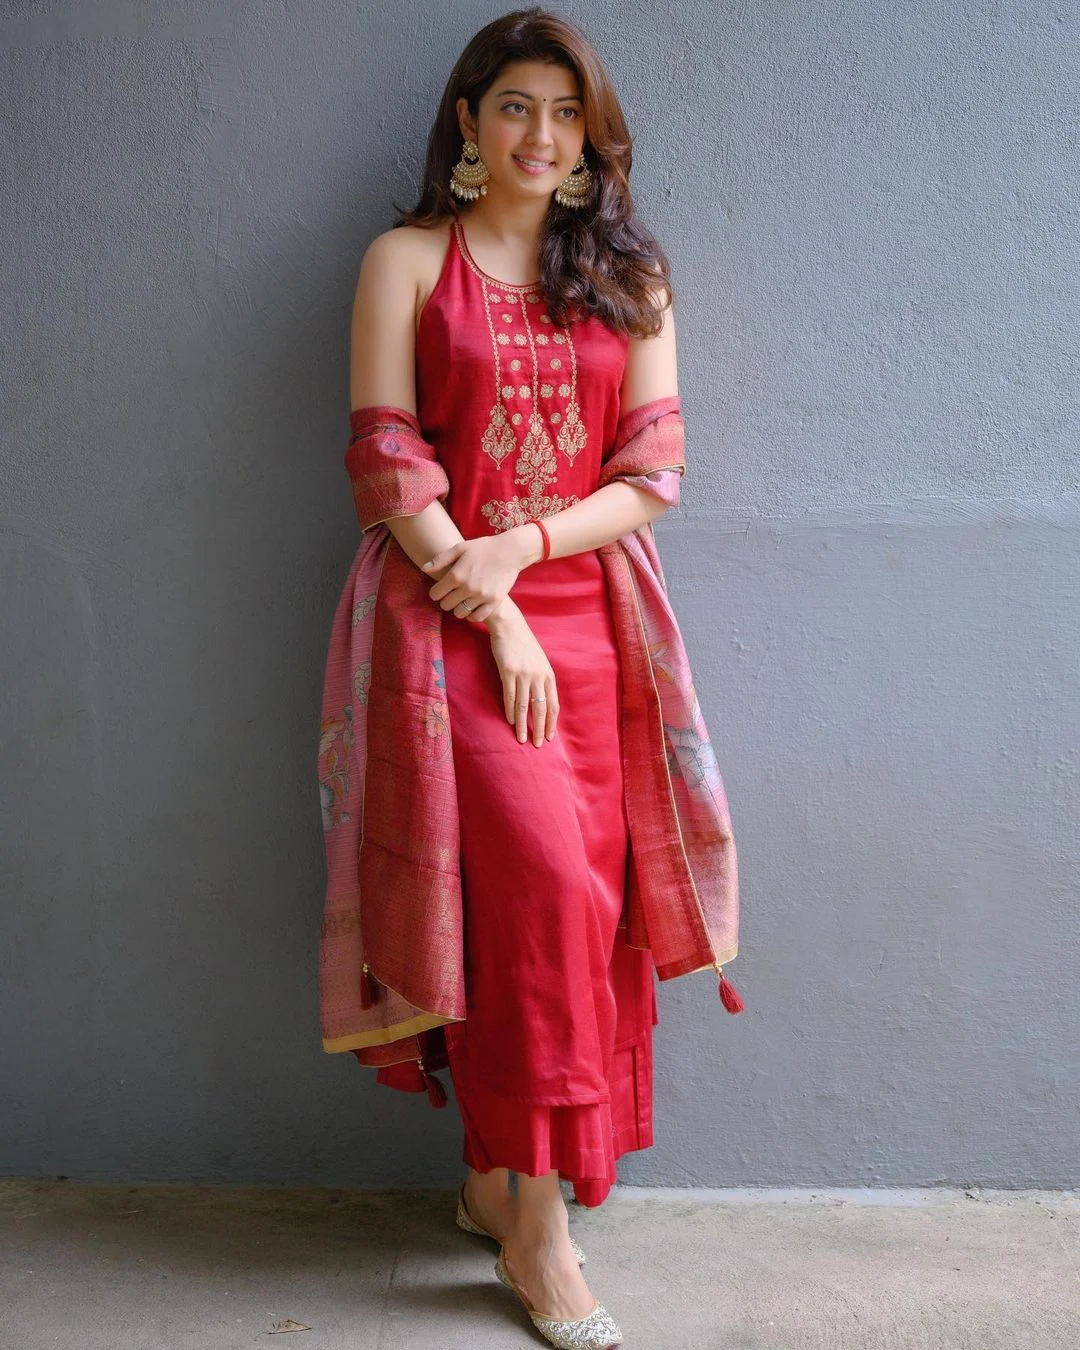 18 Hot & Sizzling Photo’s of Pranitha | Pranitha Subhash Hot, Sexy & Latest Photos